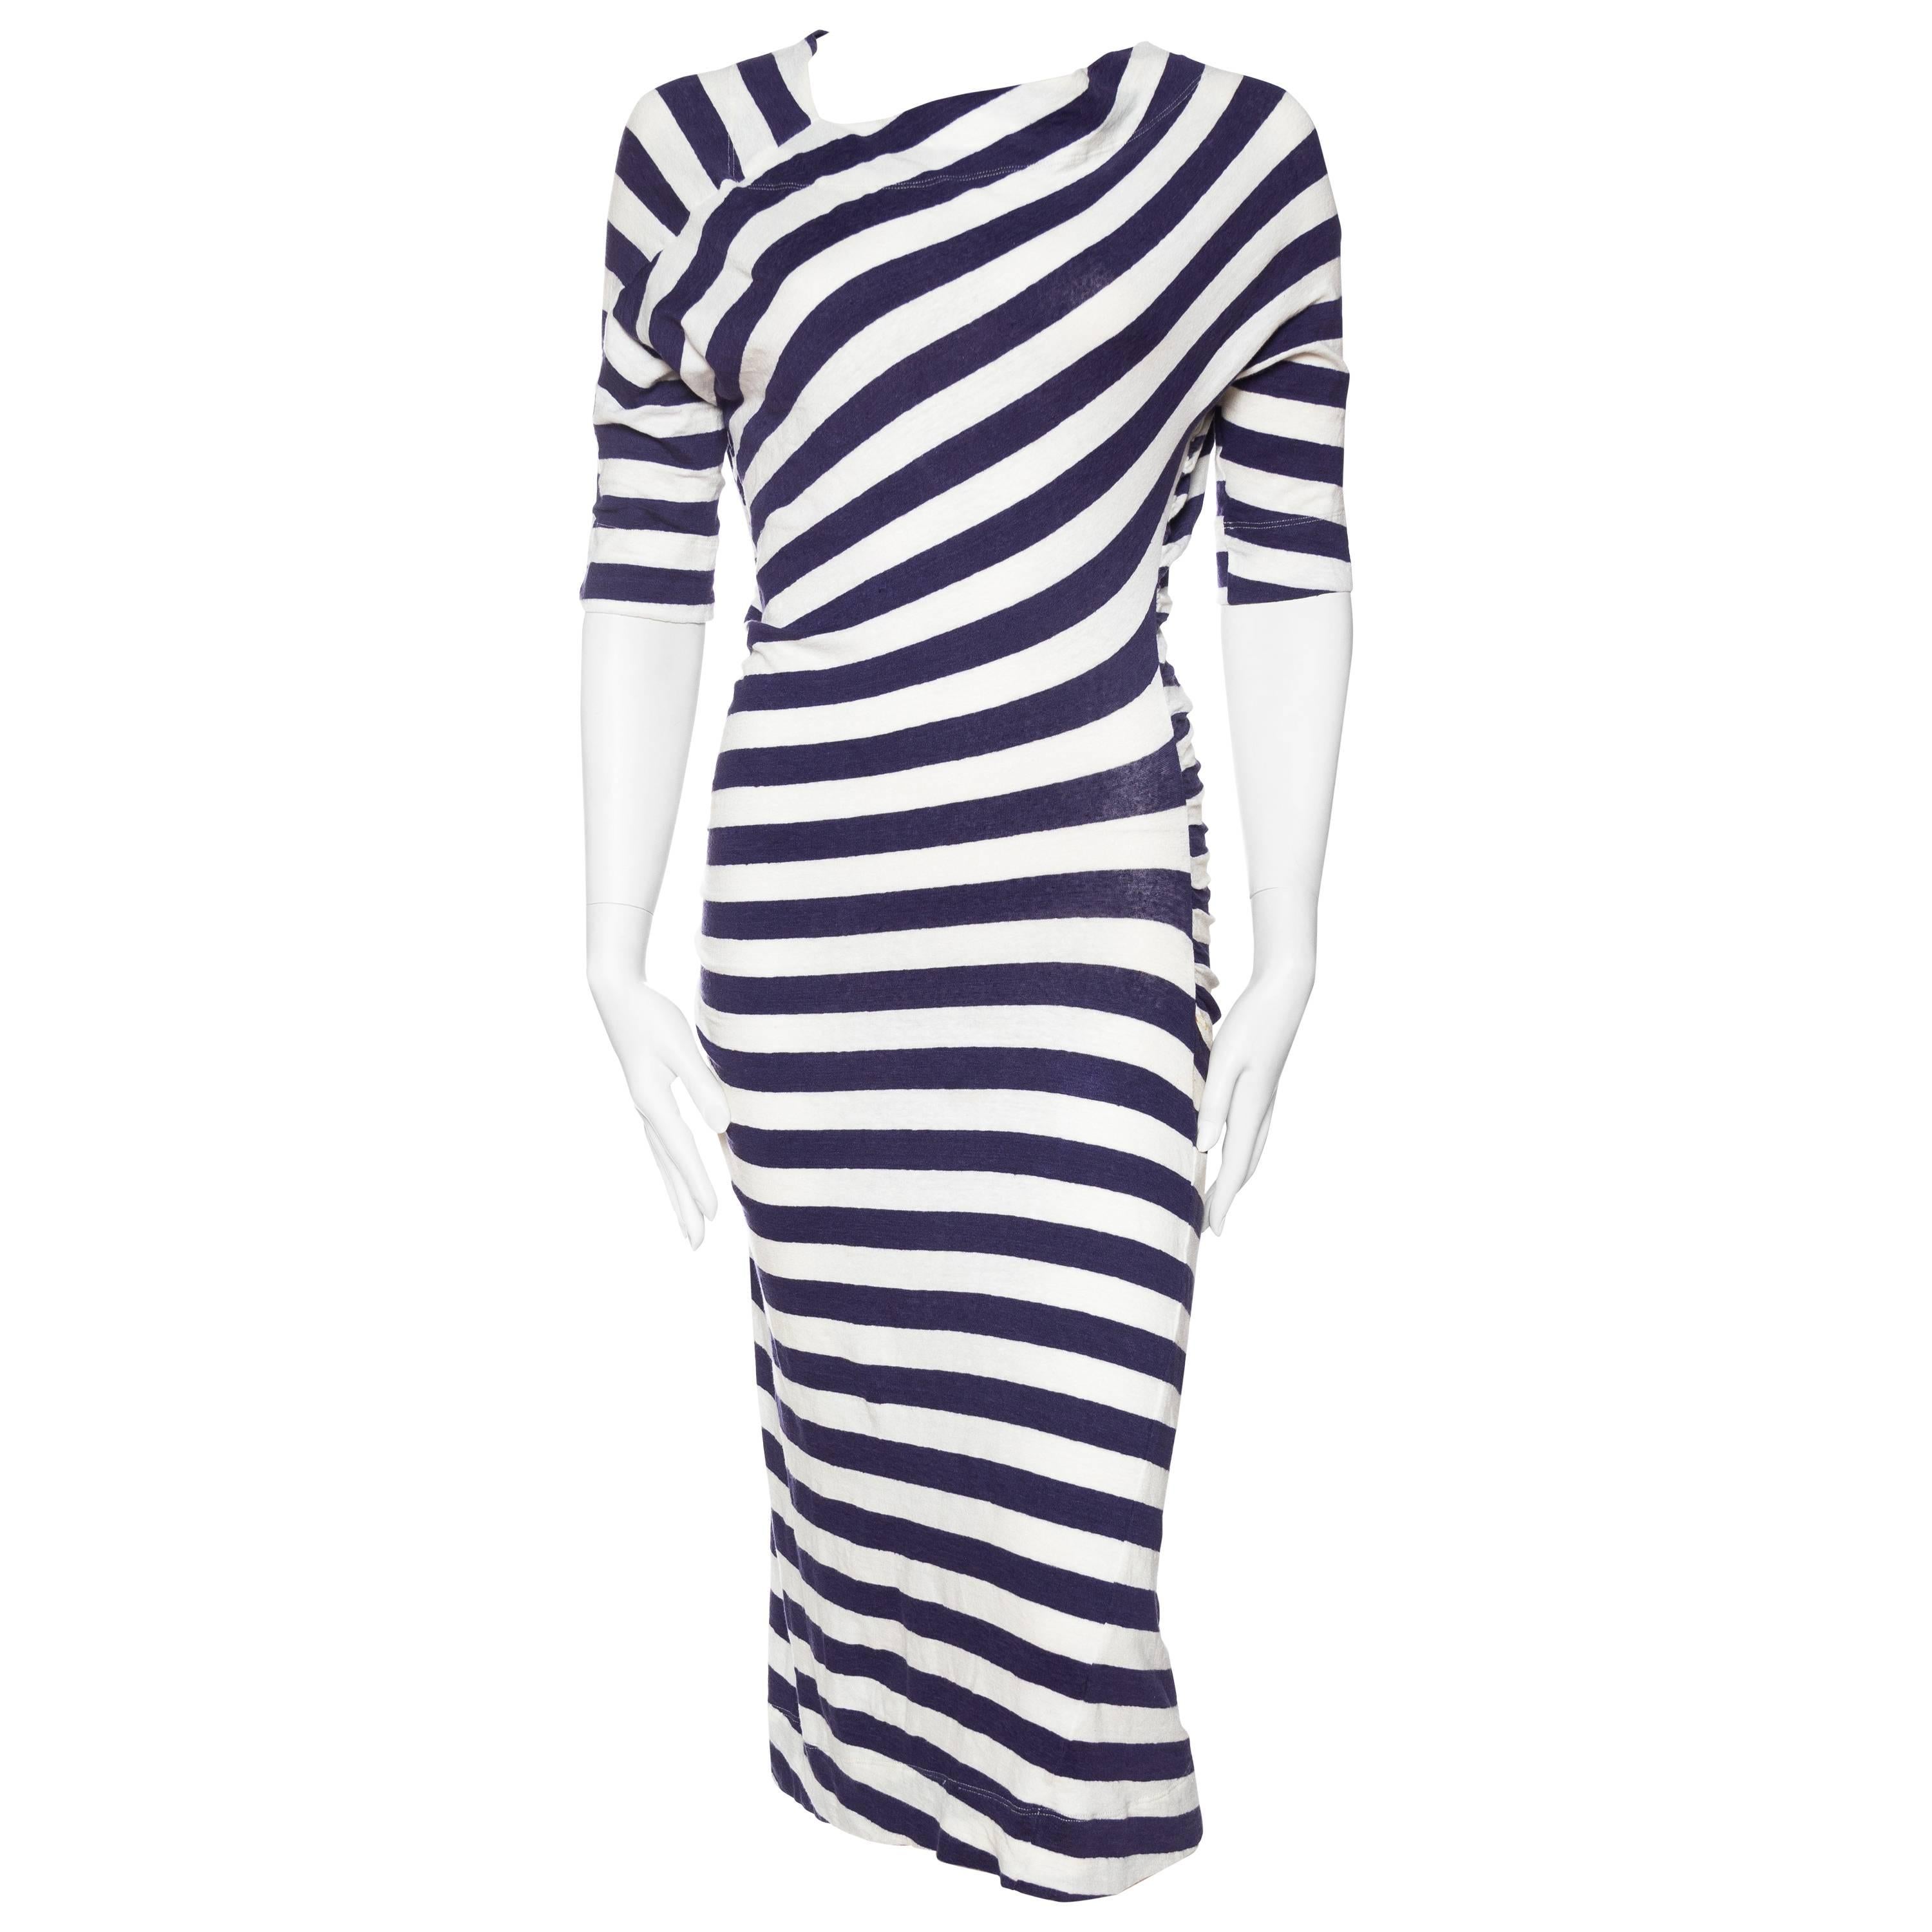 Vivienne Westwood Anglomania Linen/Cotton Knit Dress